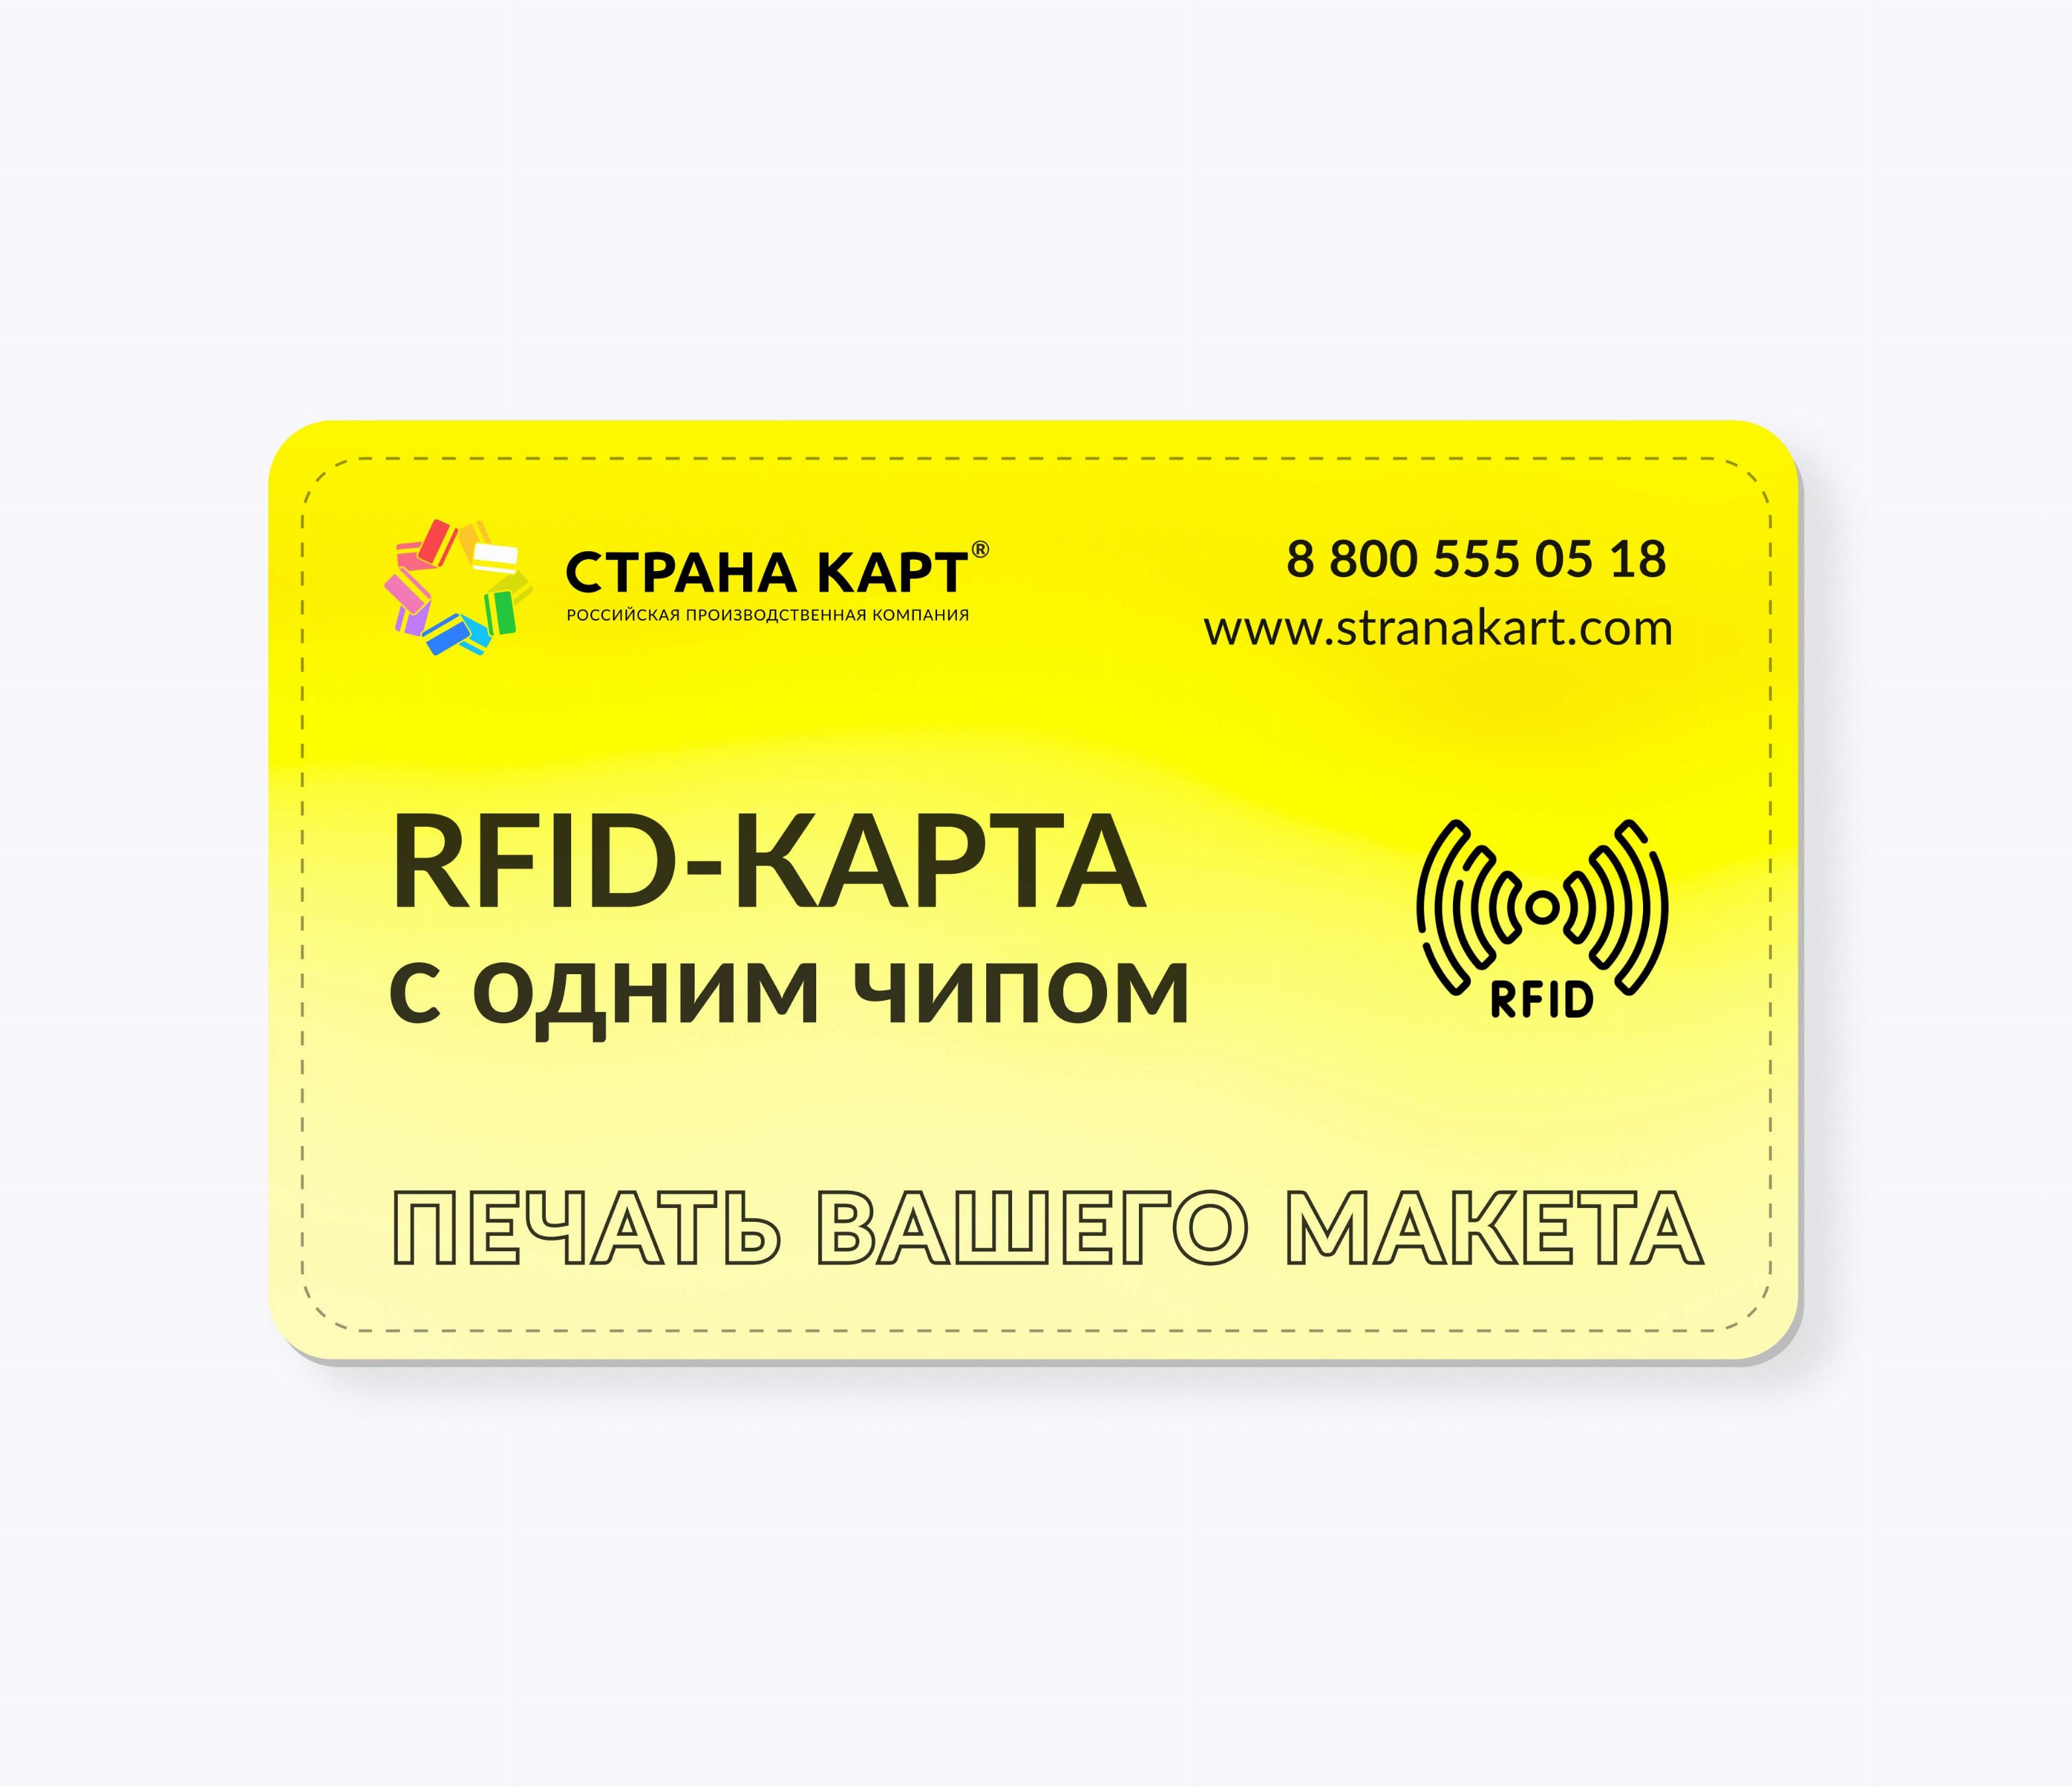 RFID-карты с чипом MIK1KMCM 4 byte nUID печать вашего макета RFID-карты с чипом MIK1KMCM 4 byte nUID